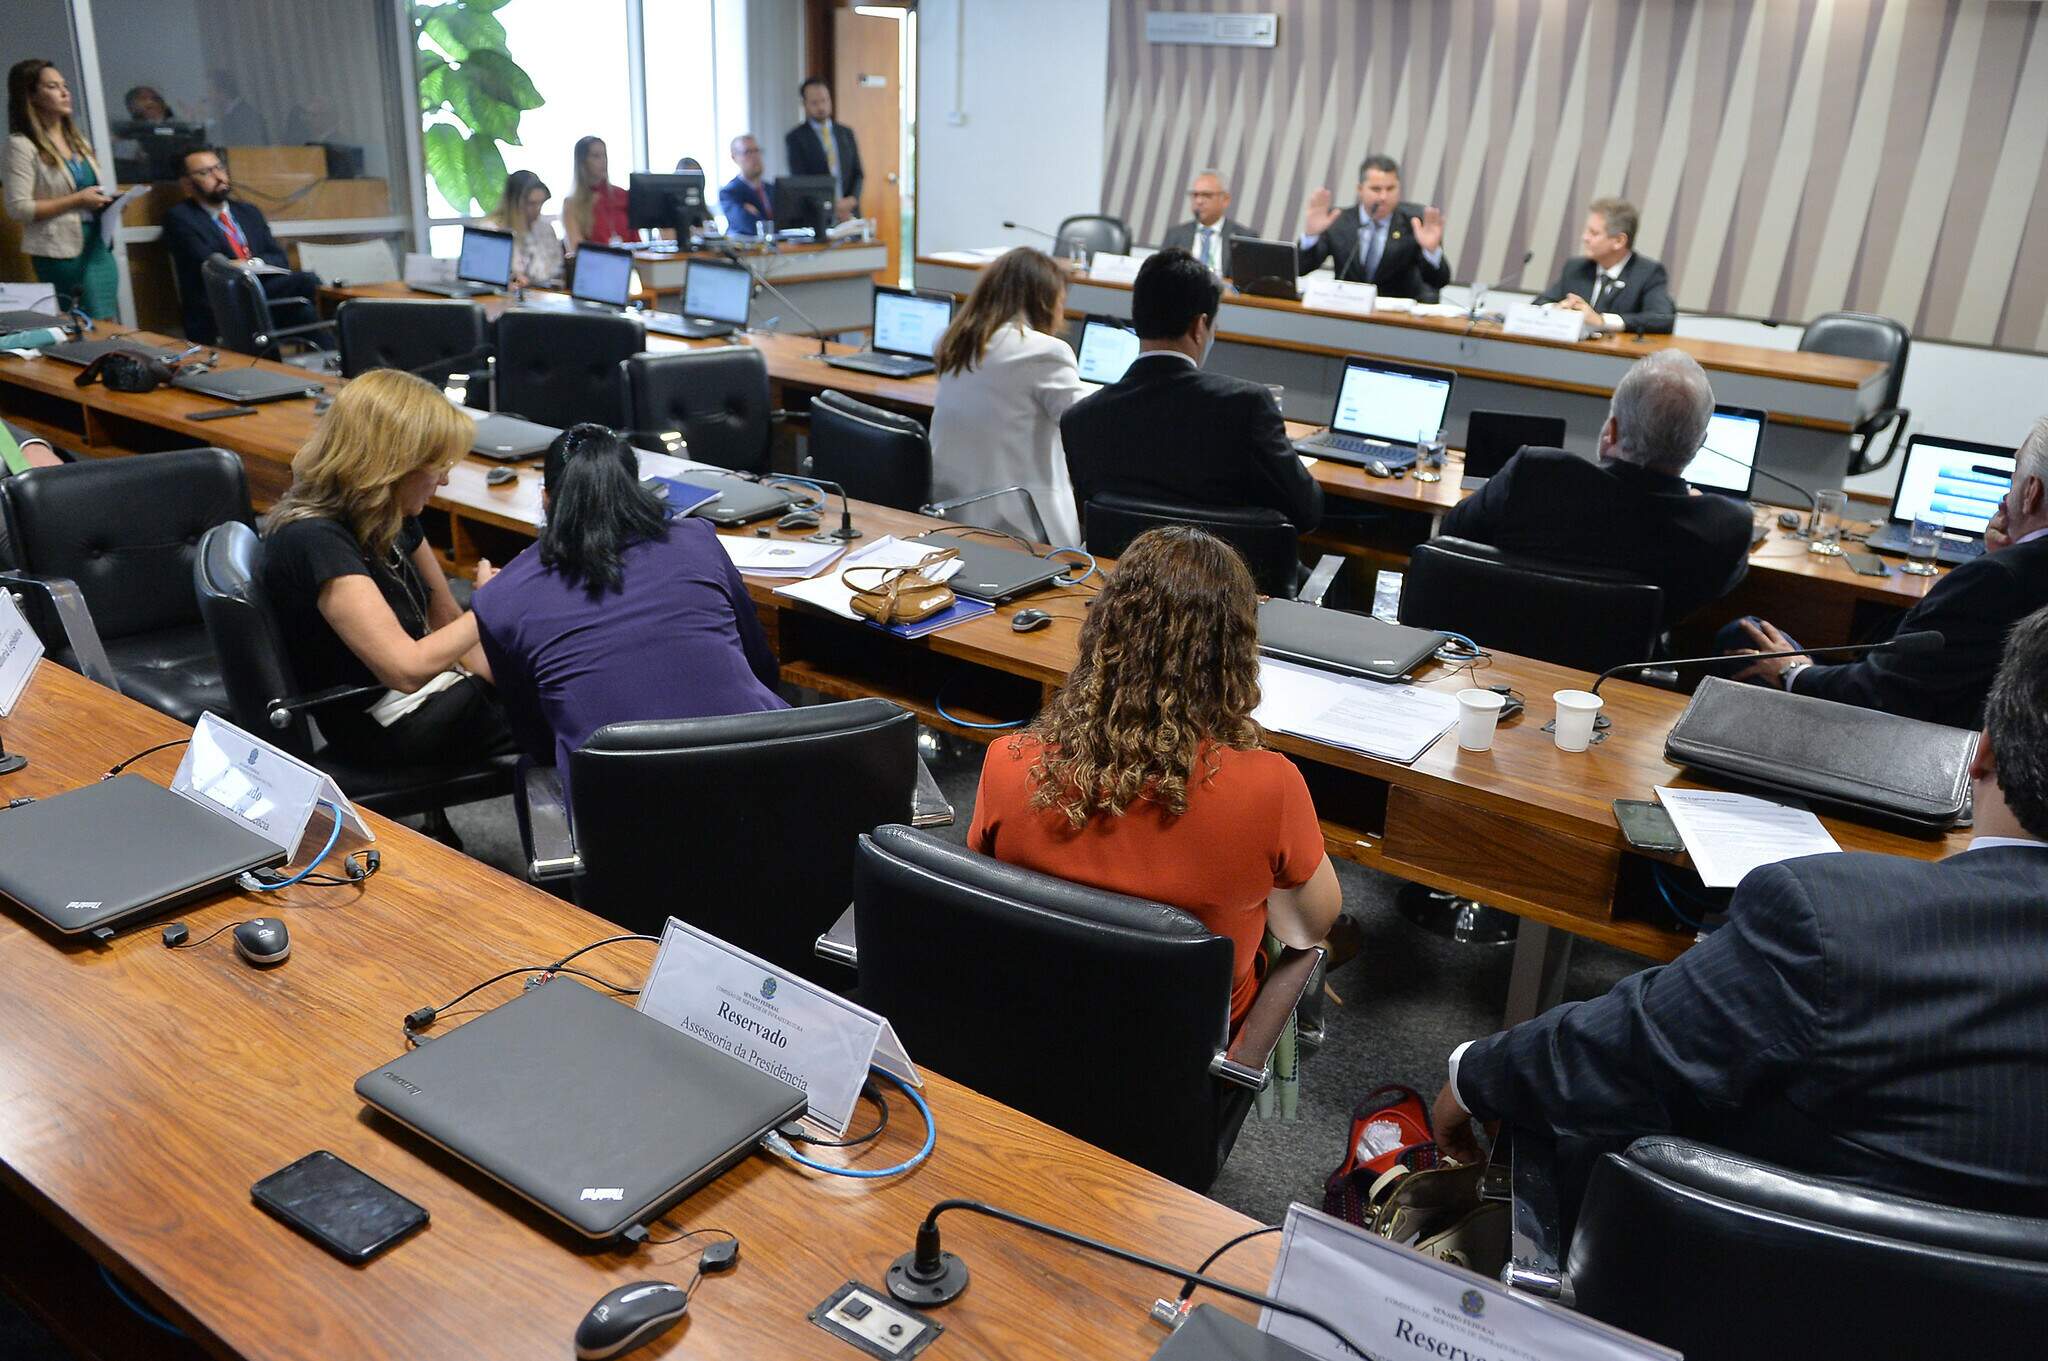 Na imagem, pessoas sentadas durante reunião de comissão parlamentar. Conteúdo 'comissões parlamentares'